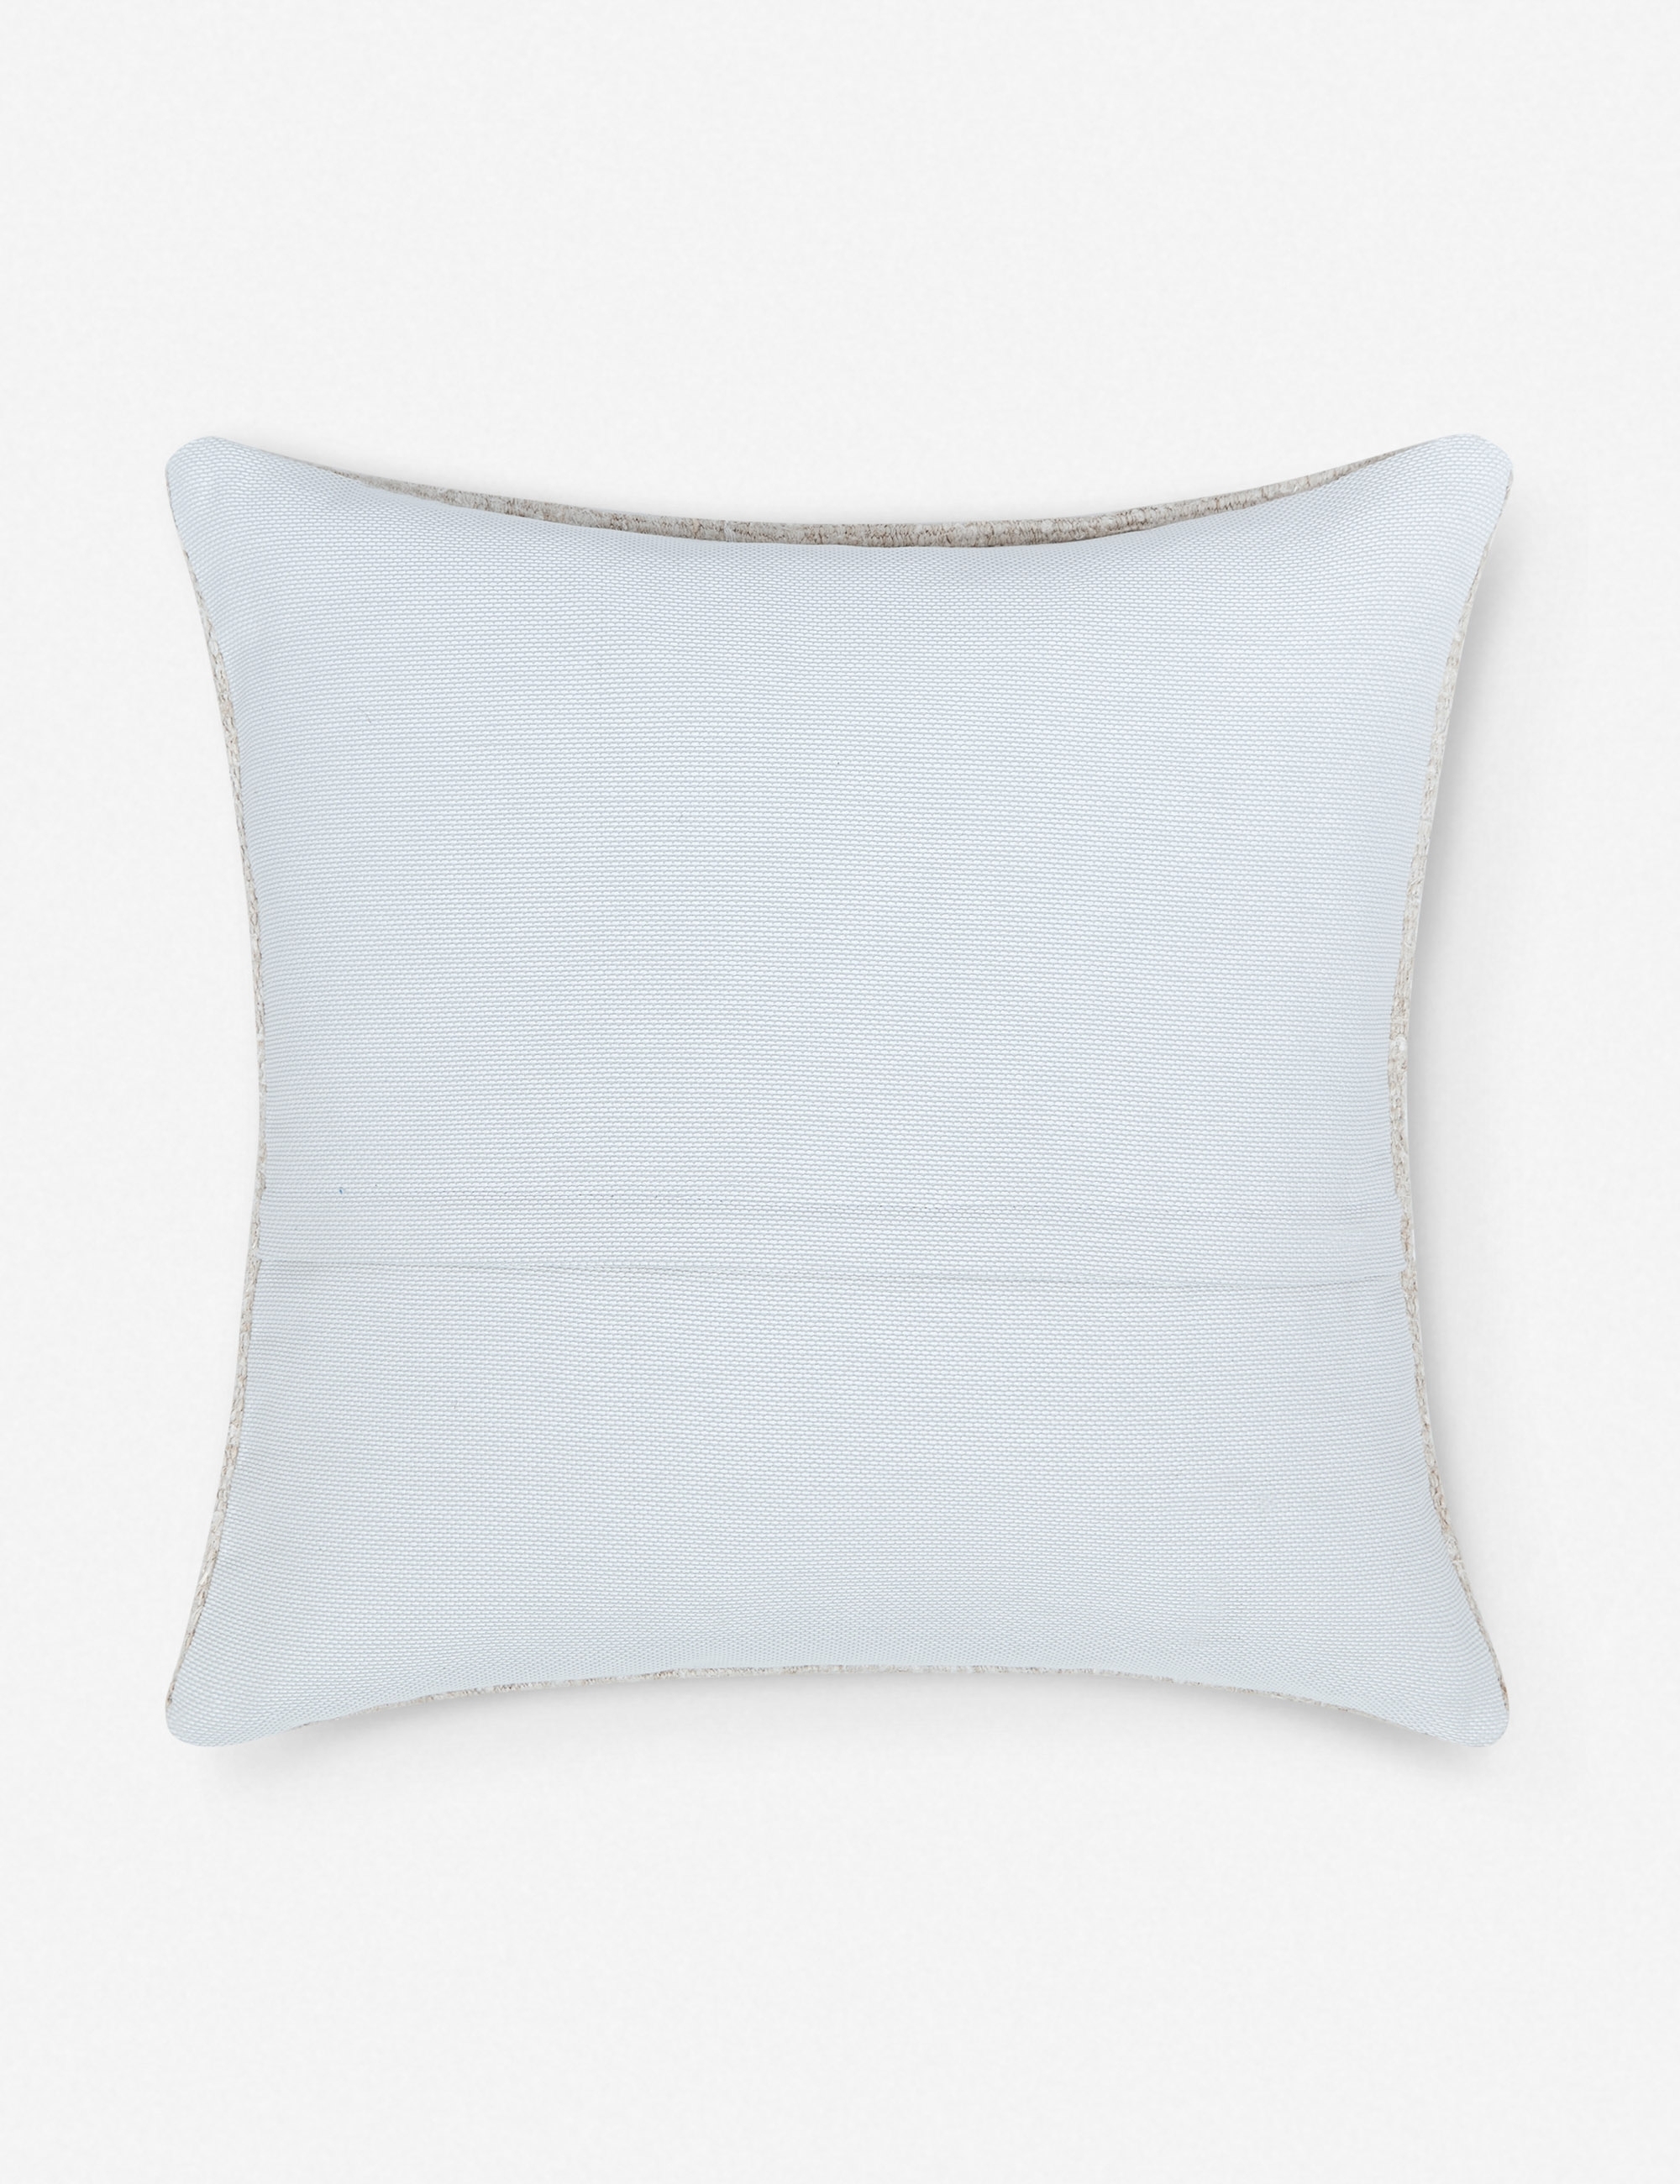 Shia Vintage Hemp Pillow - Image 2